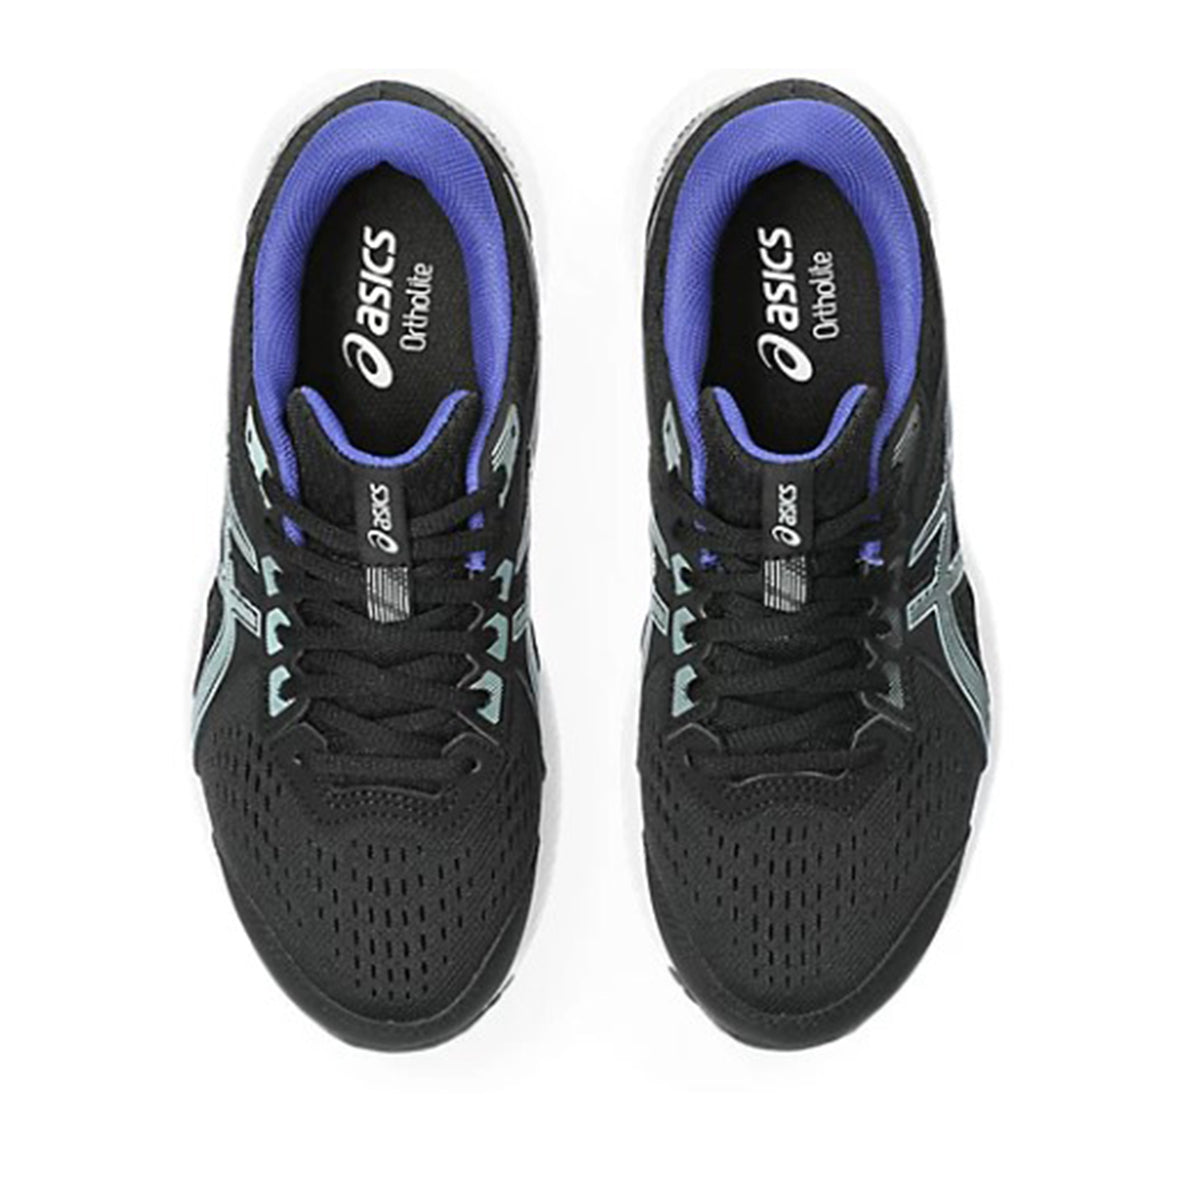 Asics Gel Contend 8 Womens Running Shoes: Black/Aquarium